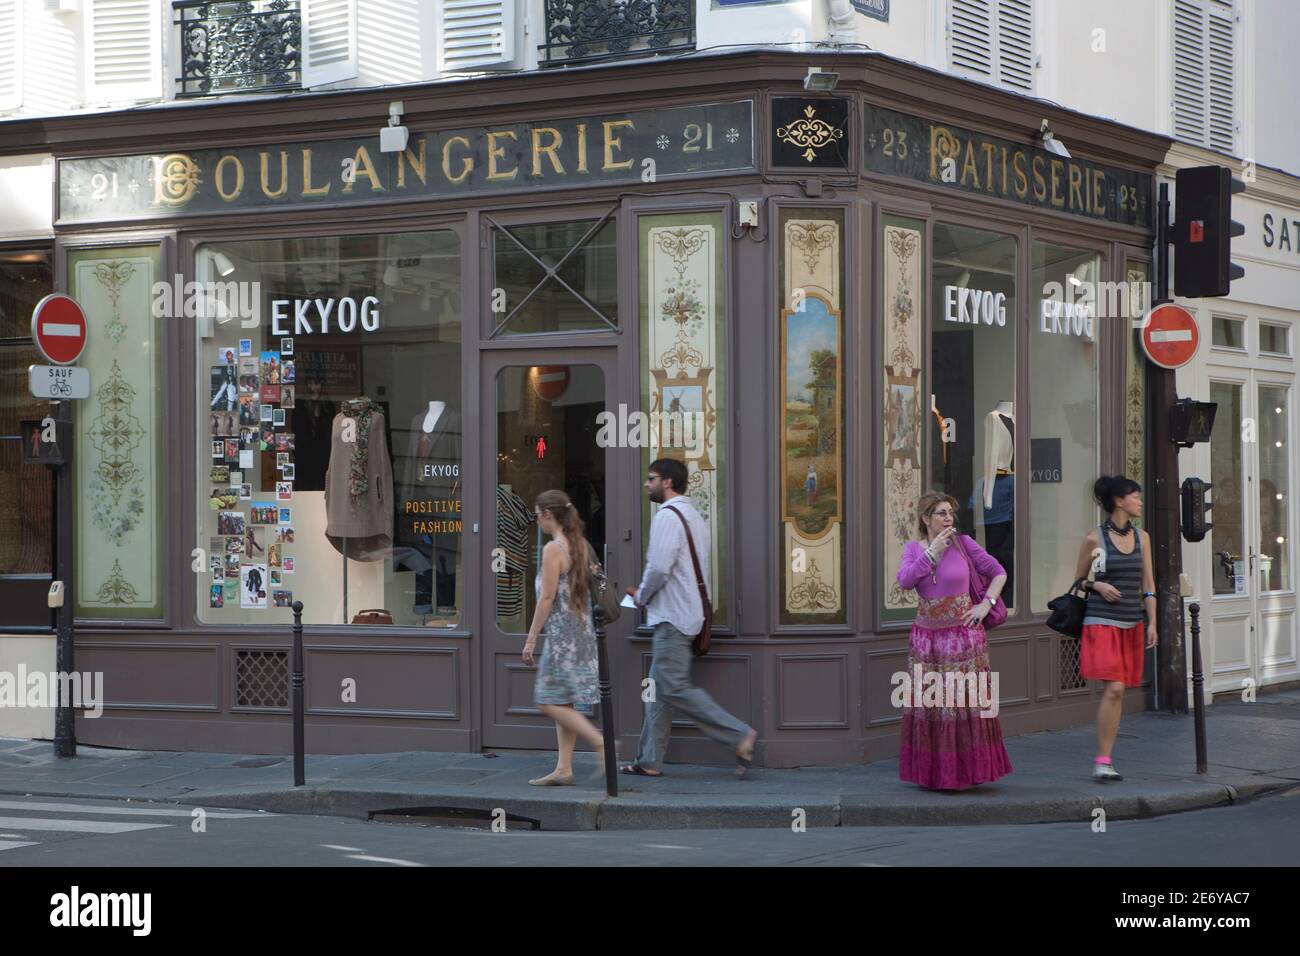 Ekyog, (23 Rue des Francs Bourgeois) Negozio di moda per l'abbigliamento etico e sostenibile Foto Stock